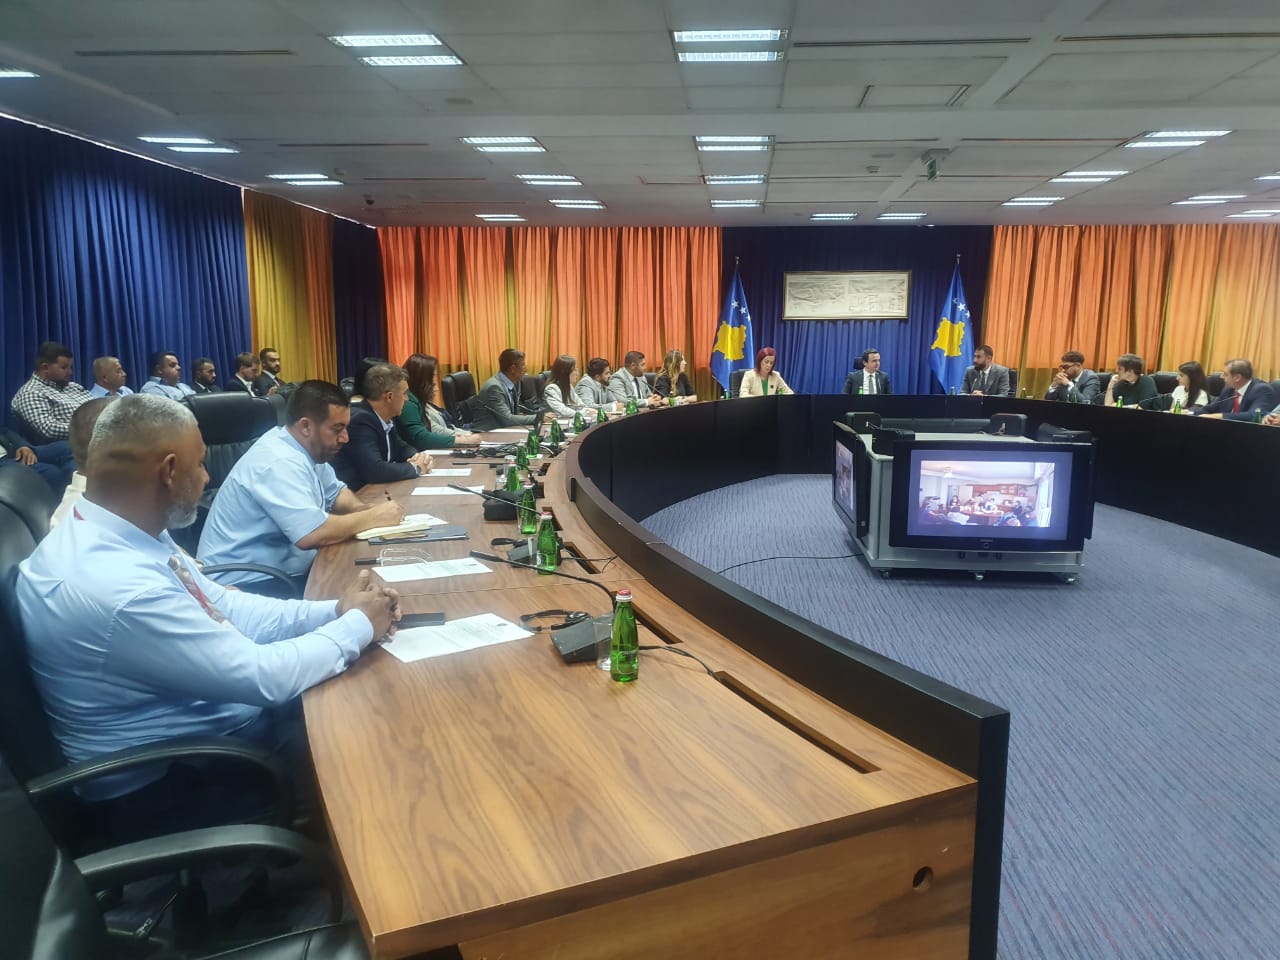 Në prag të 24 Qershorit, Kryeministri i Kosovës takohet me përfaqësuesit të komunitetit Egjiptian